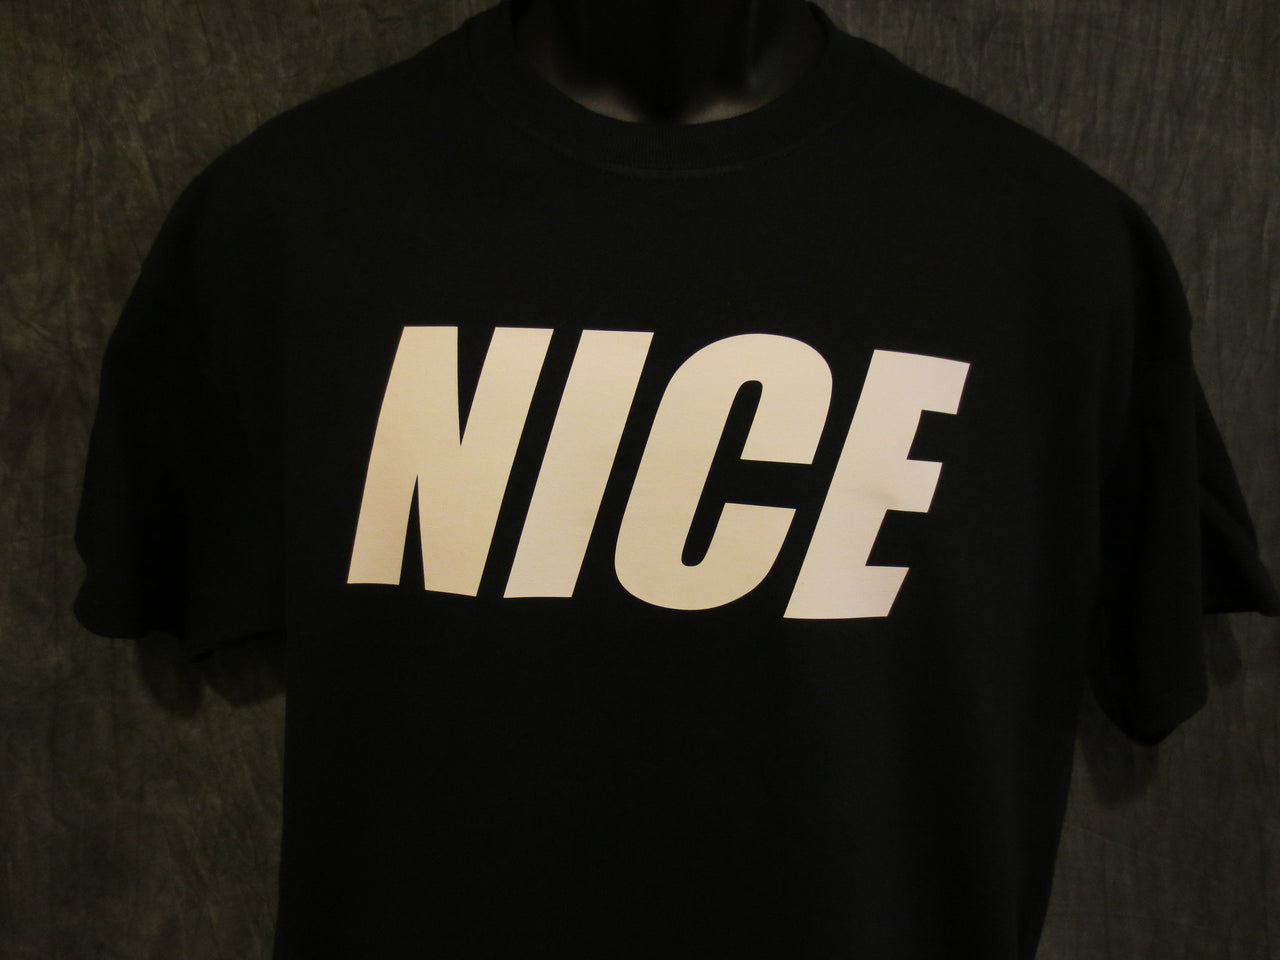 "Nice" Tshirt - Black - TshirtNow.net - 7